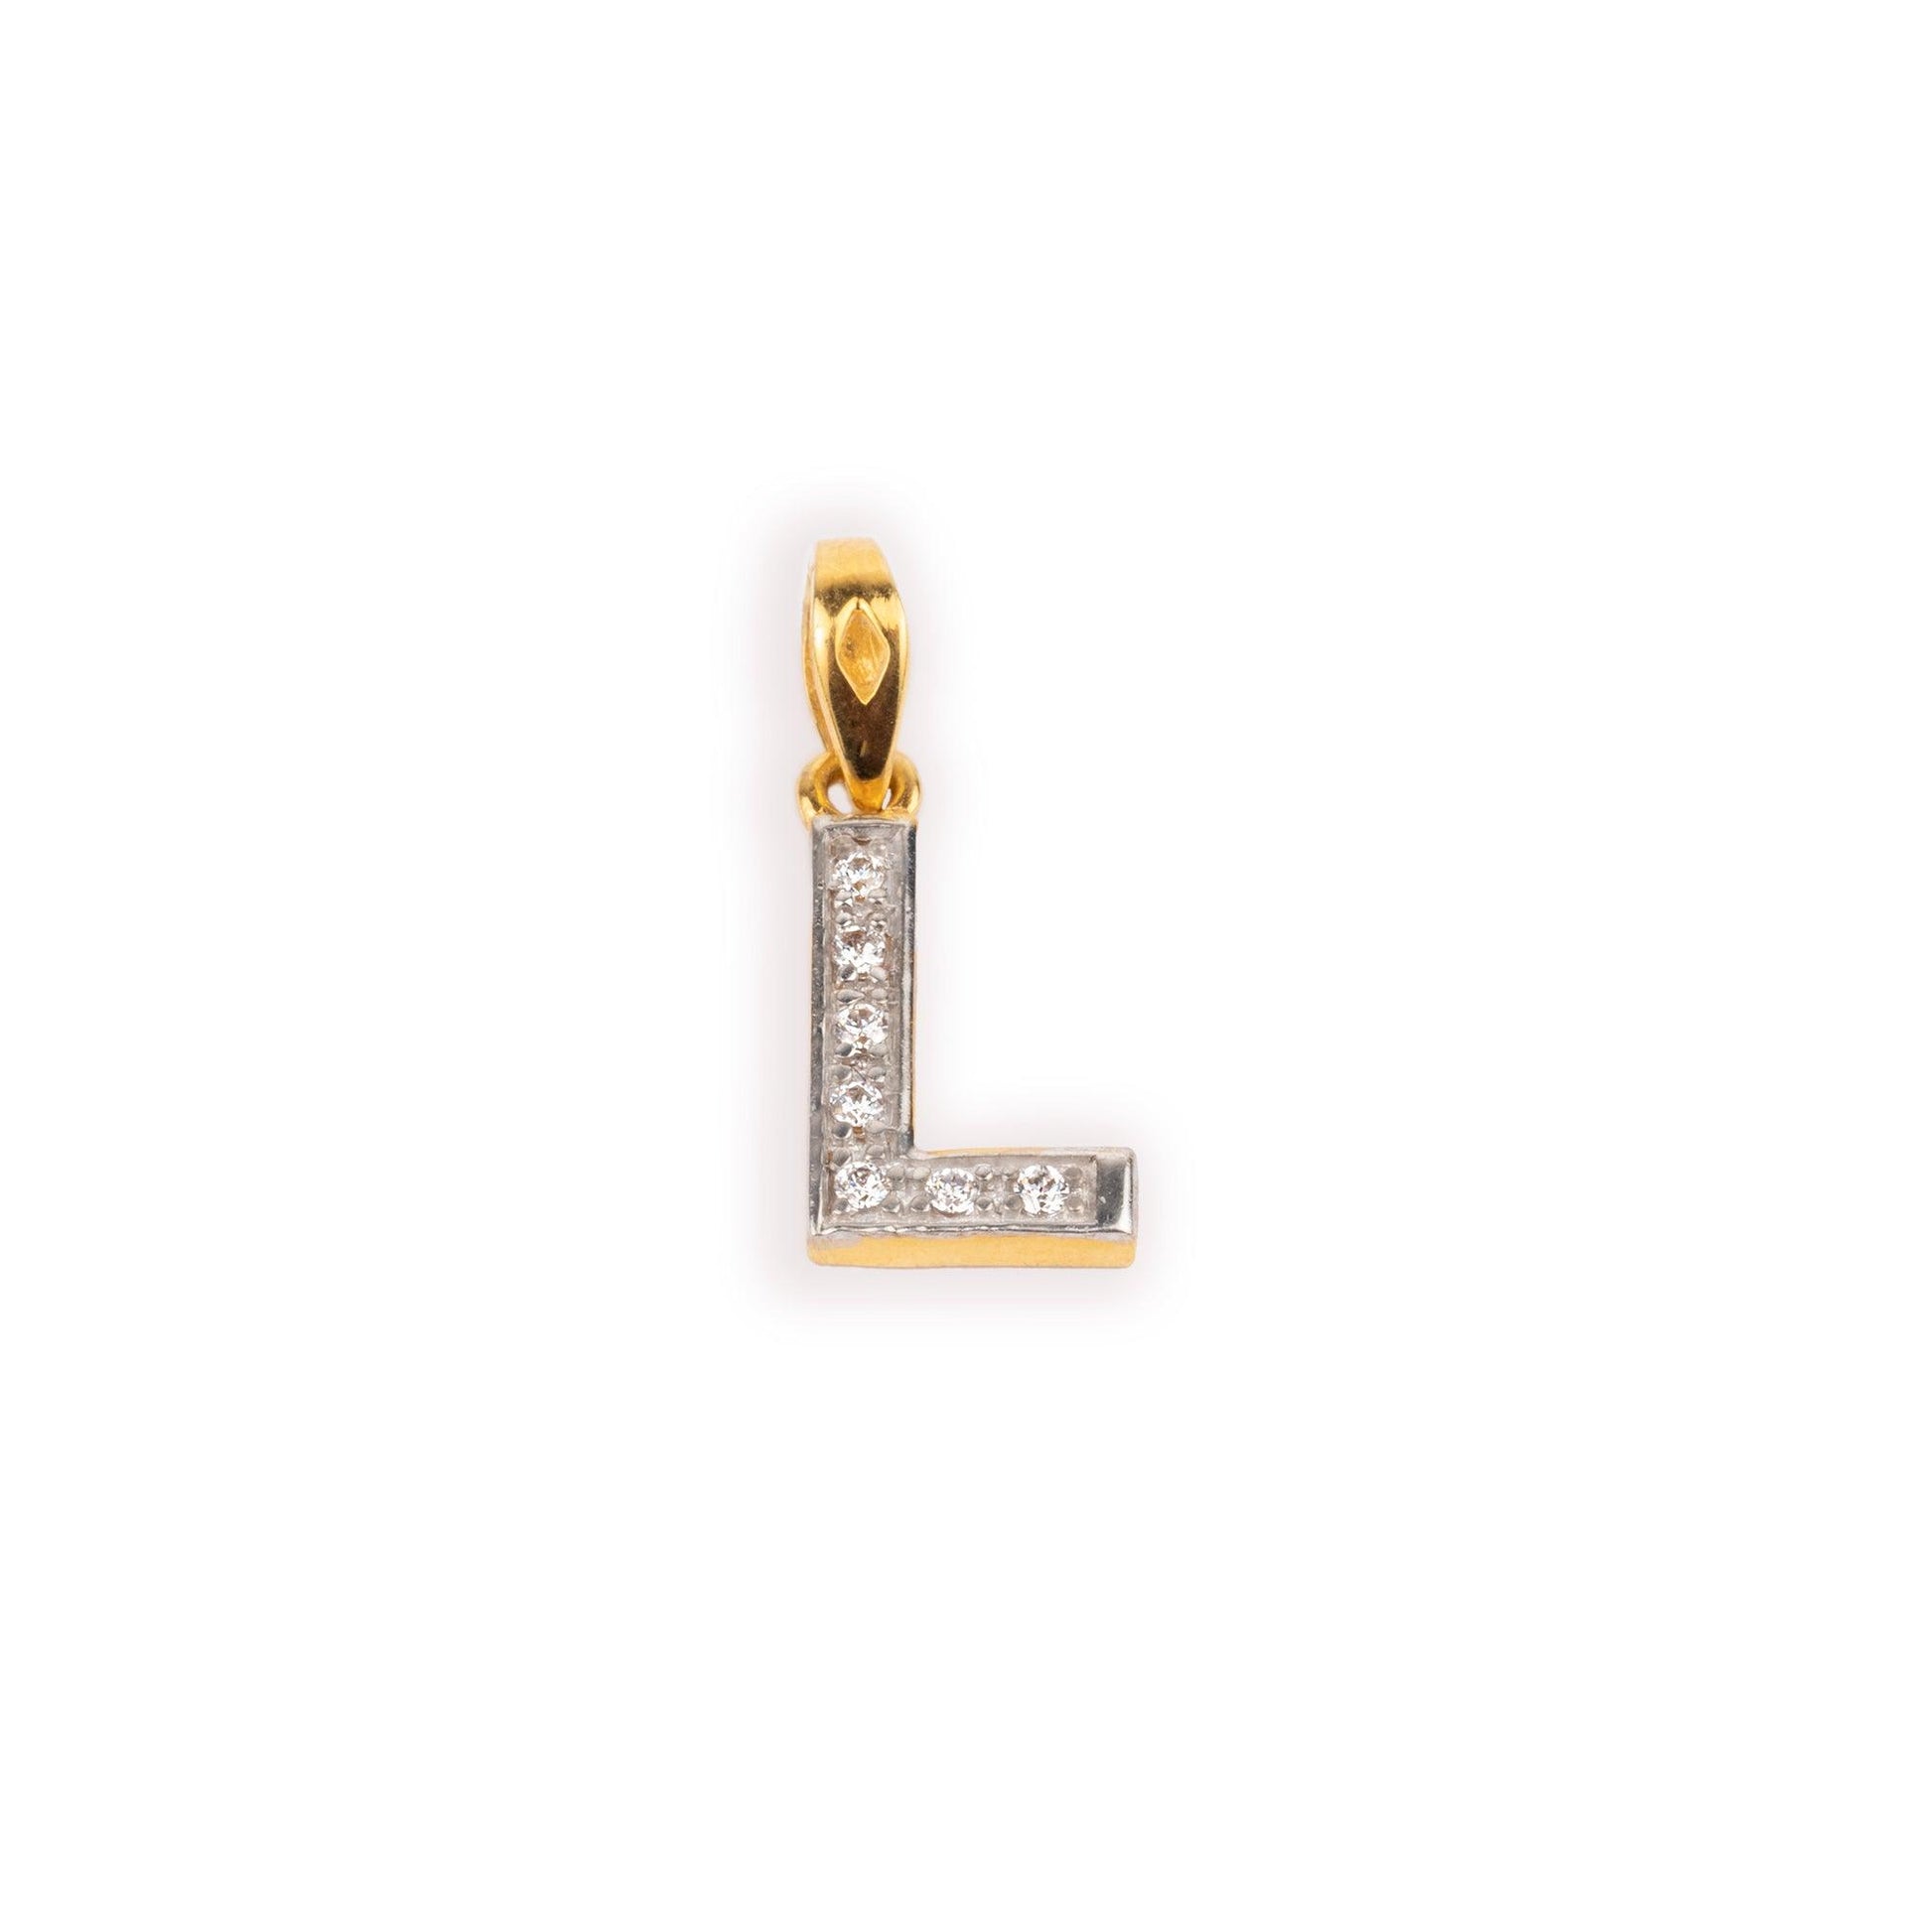 'L' 22ct Gold Swarovski Zirconia Initial Pendant P-7028 - Minar Jewellers